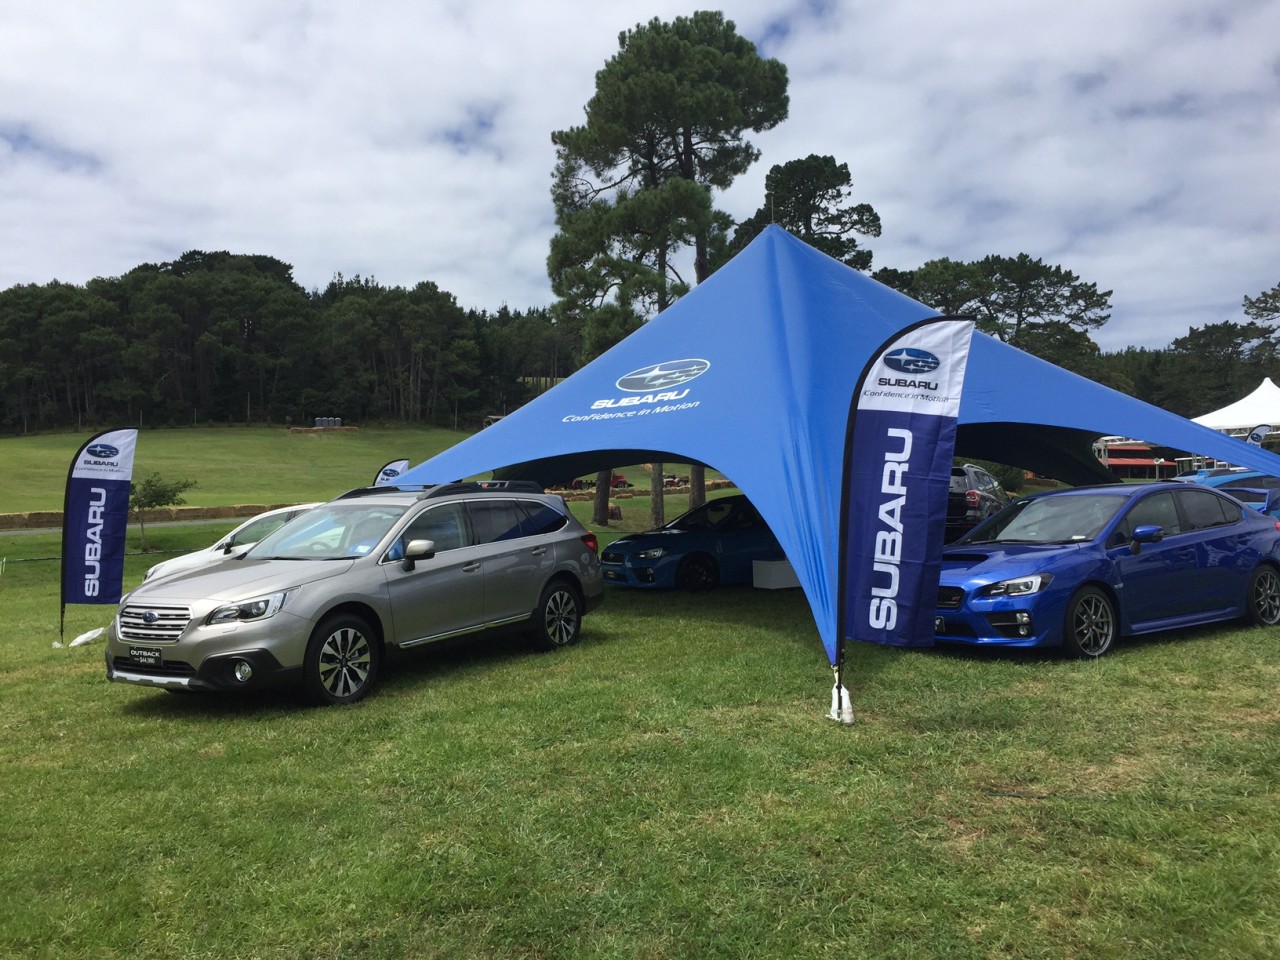 Subaru display at Leadfoot 2016